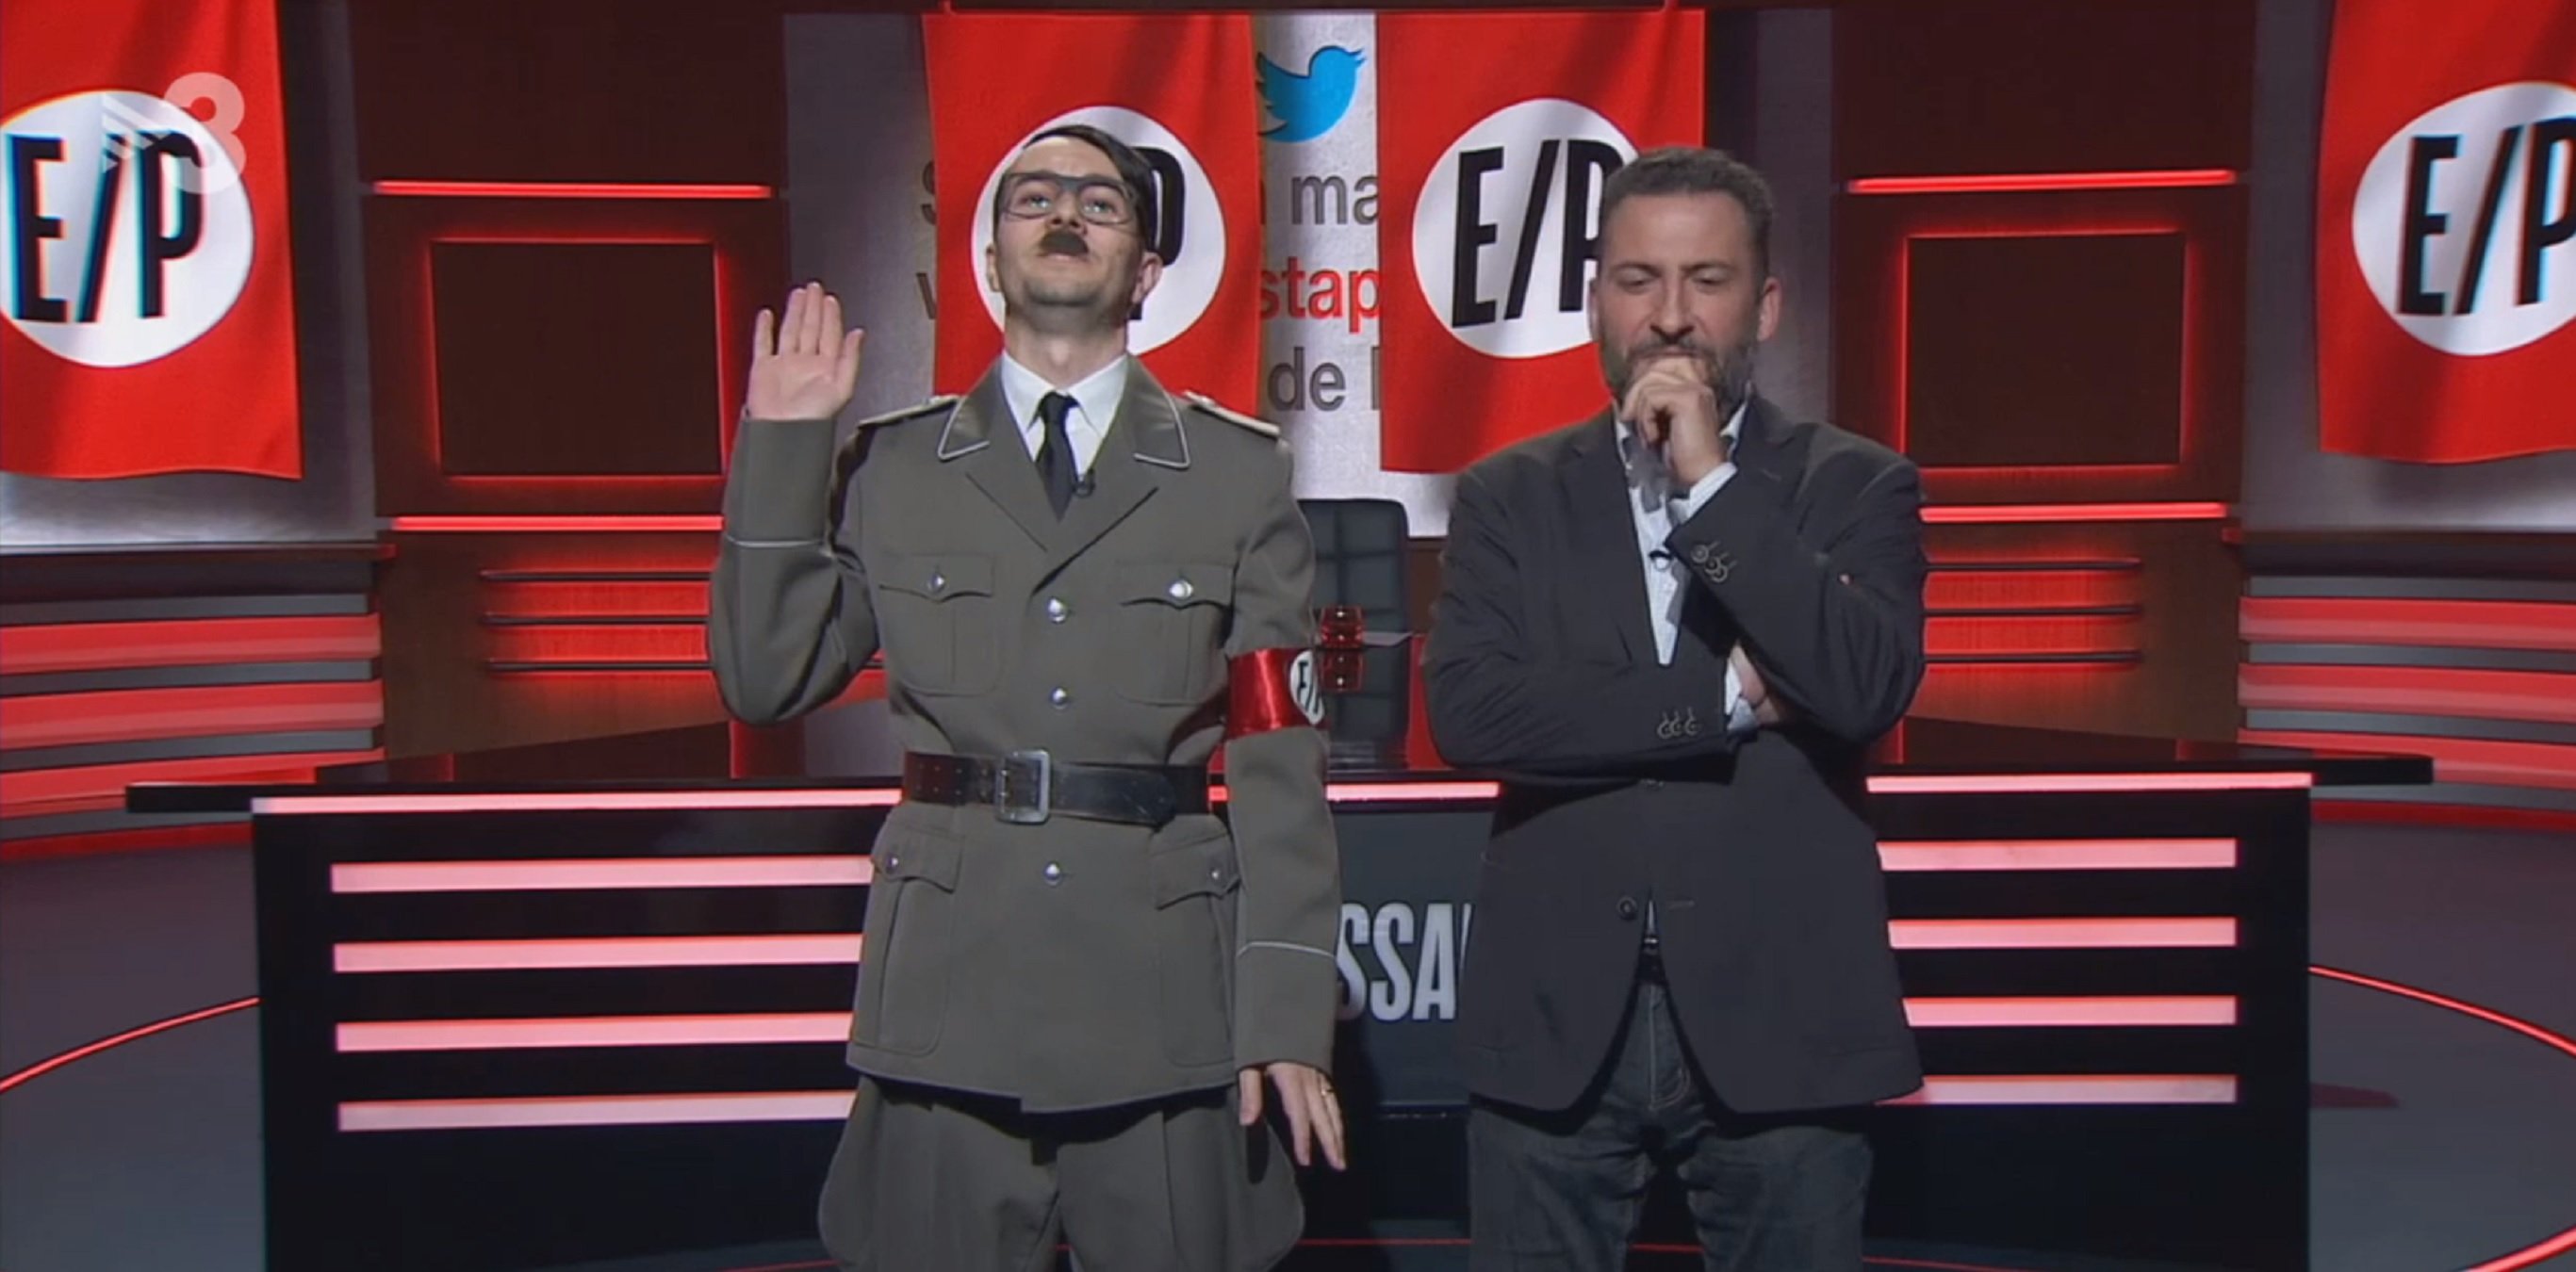 Disfrazado de Hitler en TV3: "Ya te decían nazi catalán", "¿Eres tonto o qué?"